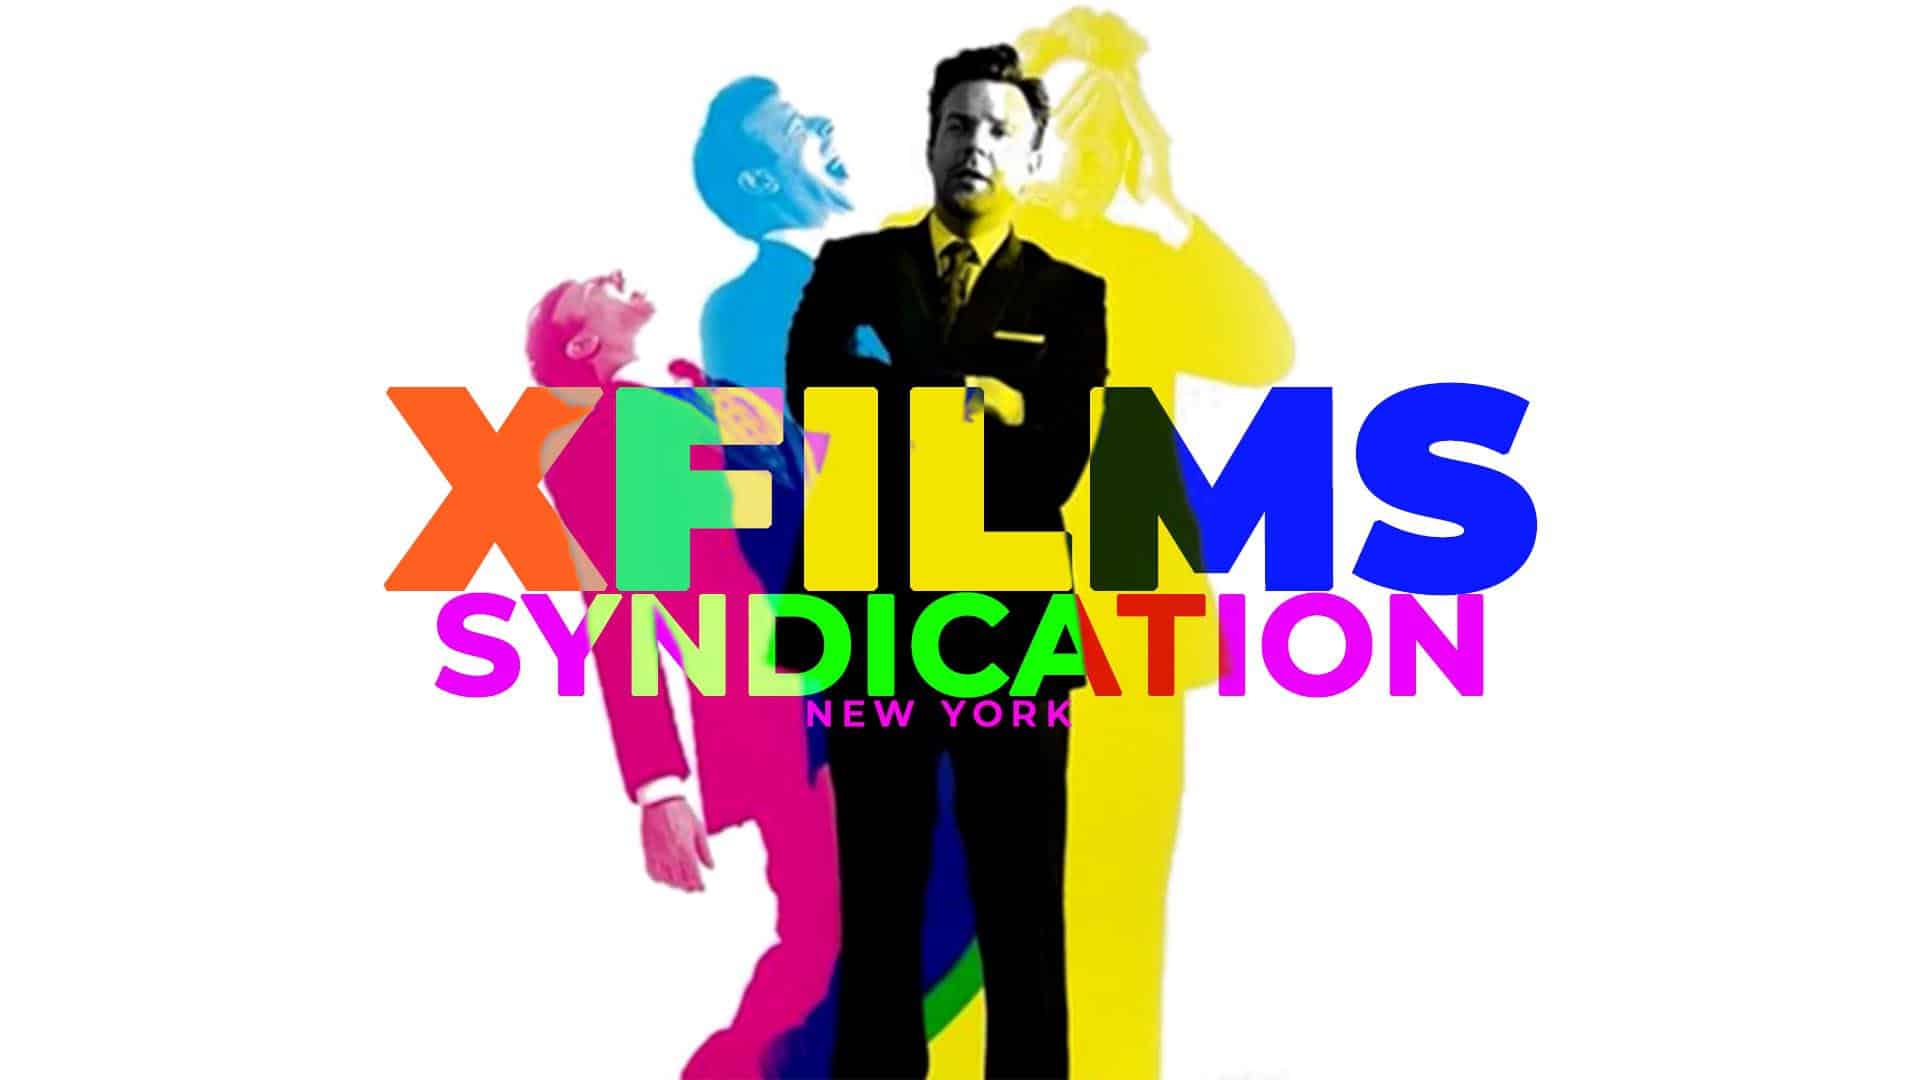 XFILMS SYNDICATION